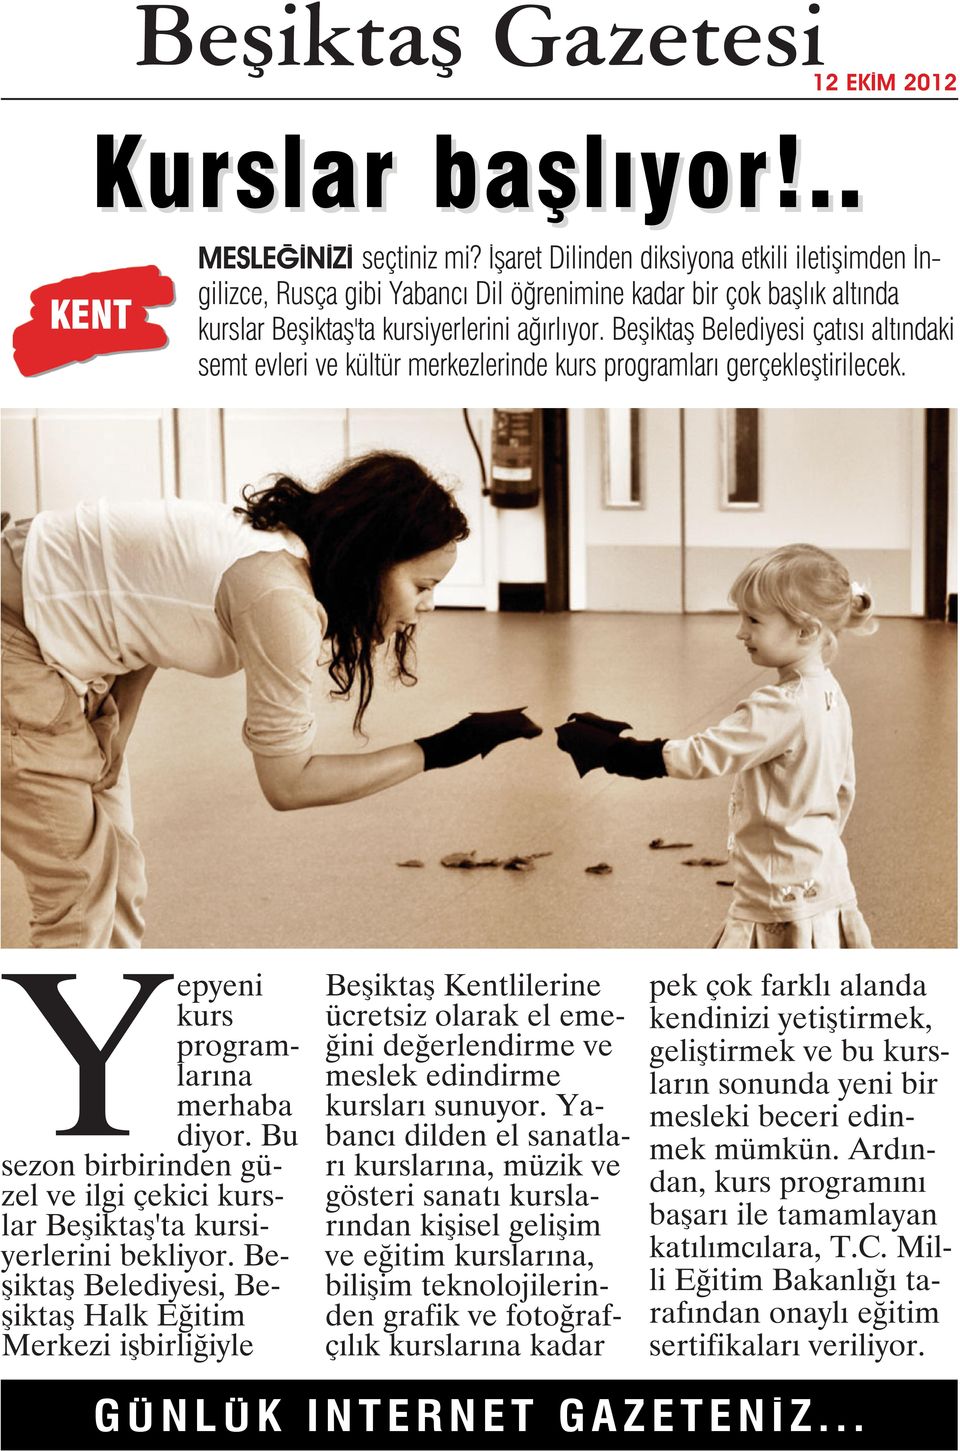 Beşiktaş Belediyesi çatısı altındaki semt evleri ve kültür merkezlerinde kurs programları gerçekleştirilecek. Yepyeni kurs programlarına merhaba diyor.